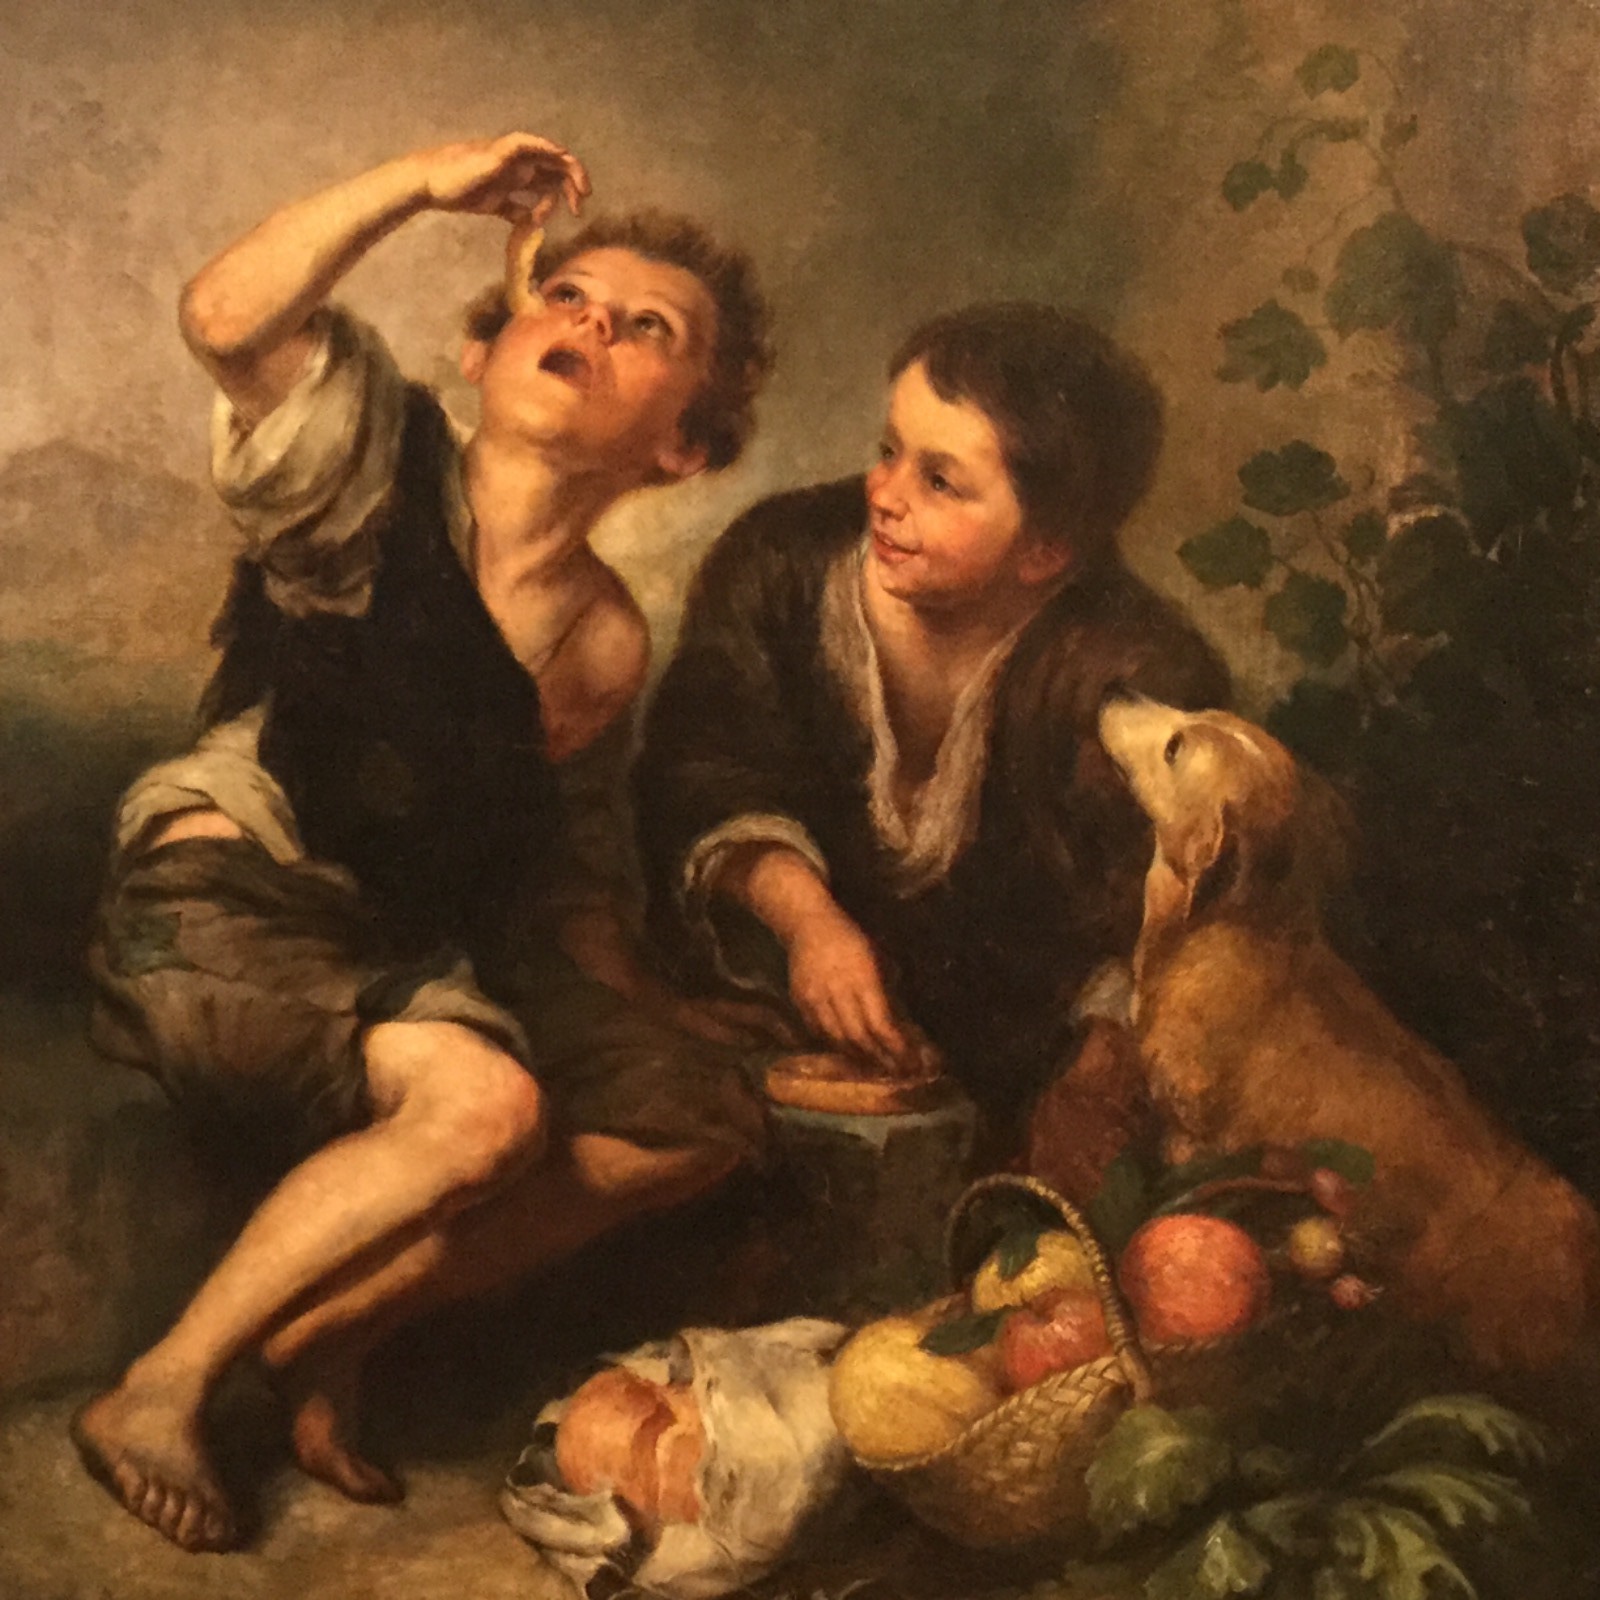 Мурильо мальчик с собакой. Бартоломе Эстебан Мурильо (1617-1682). Бартоломе Эстебан Мурильо. Бартоломео Эстебан Мурильо (1618—1682). Художник Бартоломе Эстебан Мурильо.